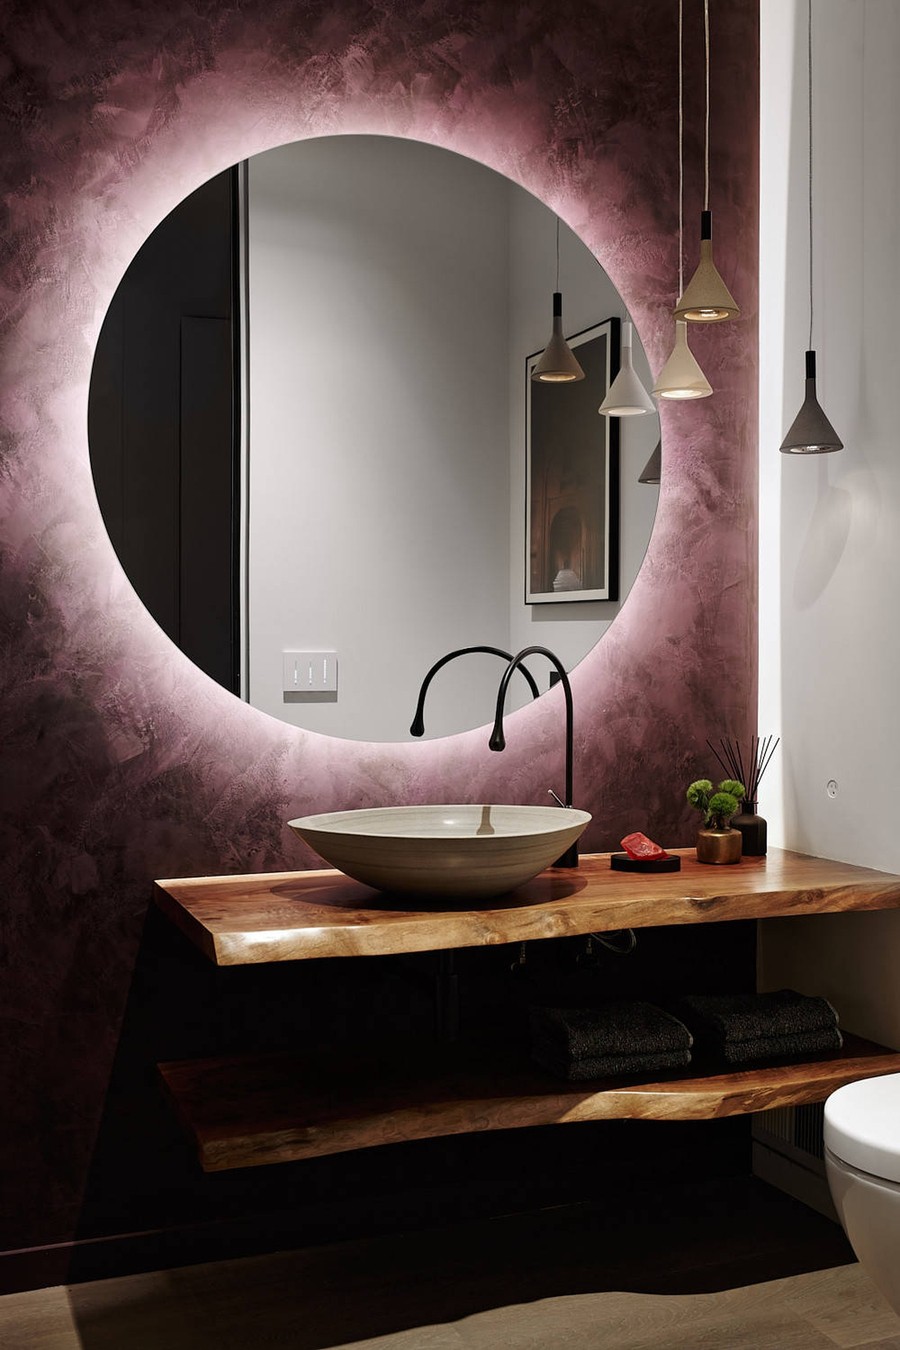 Ngôi nhà của bạn cần một chiếc đèn gương phòng tắm hiện đại 2024 để tôn lên sự tinh tế và sang trọng. Bộ sản phẩm này đem lại nhiều tiện nghi tối ưu, từ ánh sáng tự nhiên cho đến tính năng khử sạch bụi, giúp bạn kết nối trực tiếp với tự nhiên và đón nhận năng lượng tốt lành.